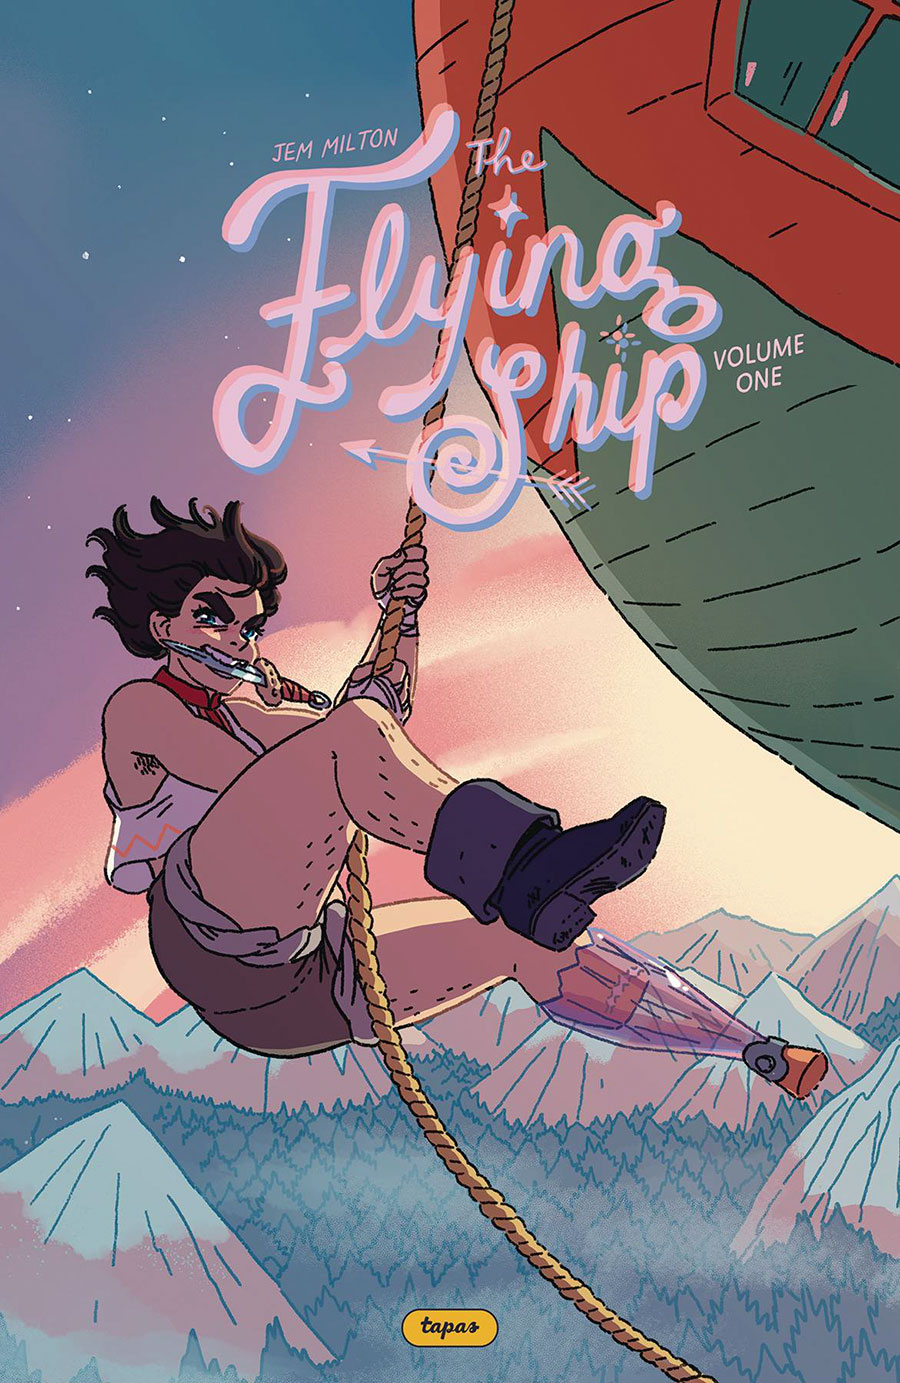 Flying Ship Vol 1 TP